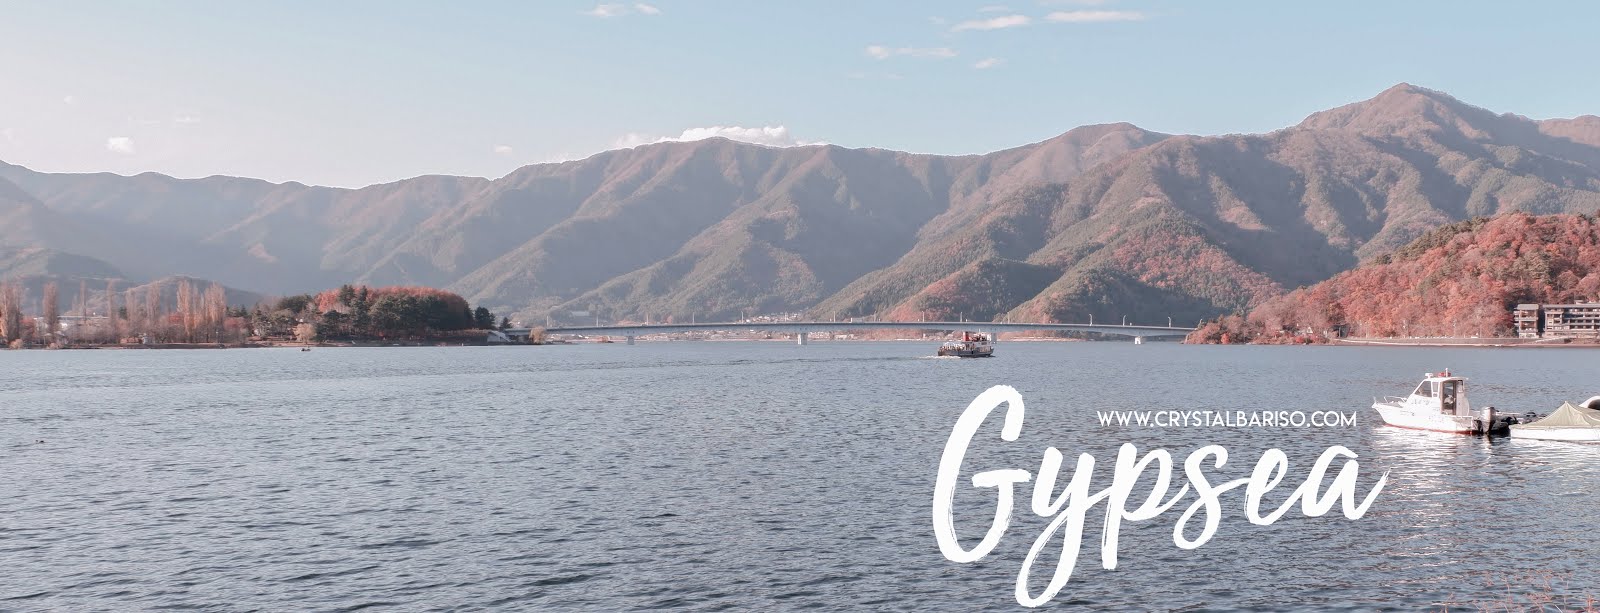 GYPSEA : A Travel Blog by Crystal Bariso